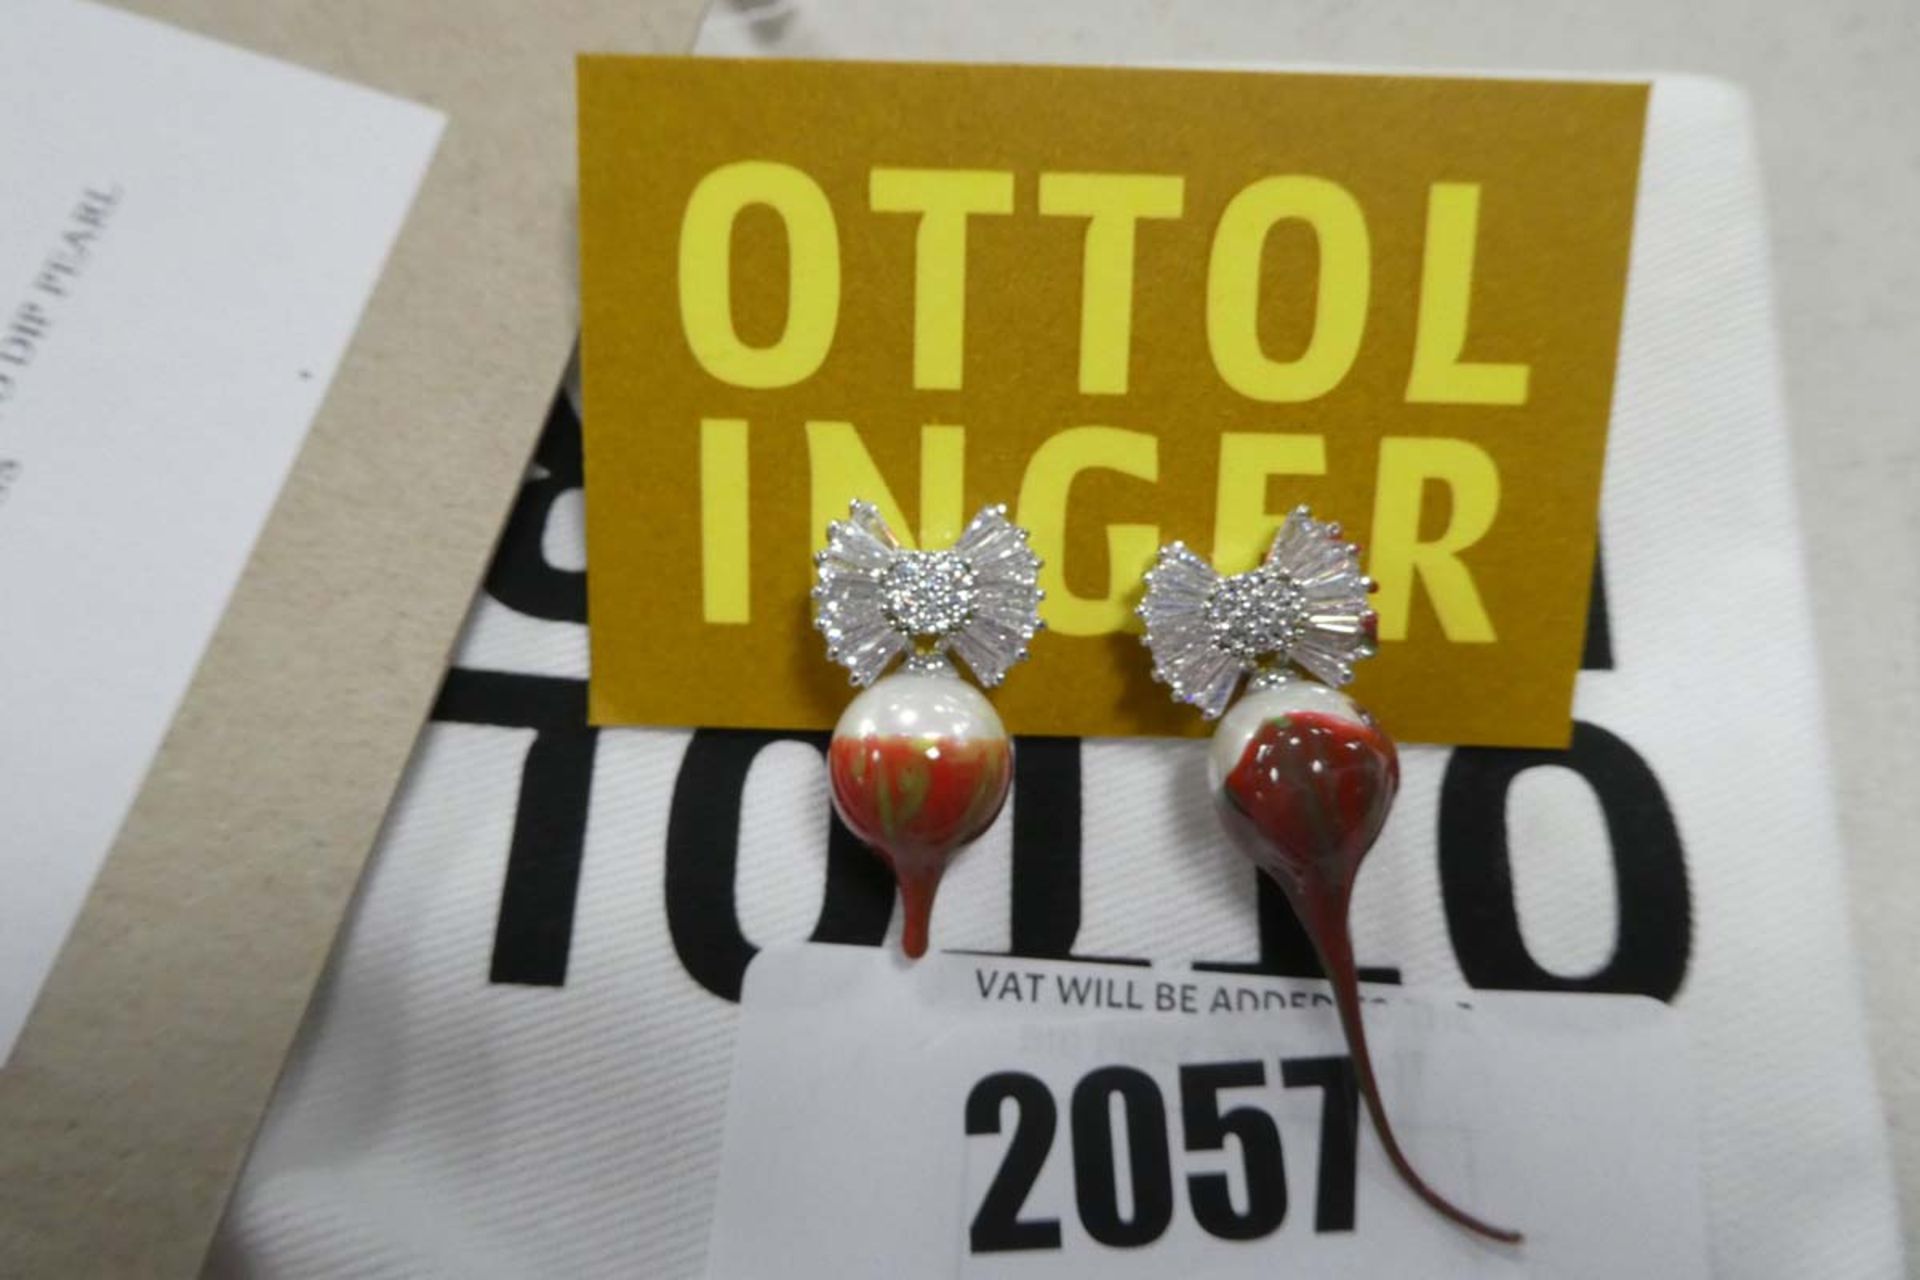 Ottolinger pair of earrings - Image 2 of 2